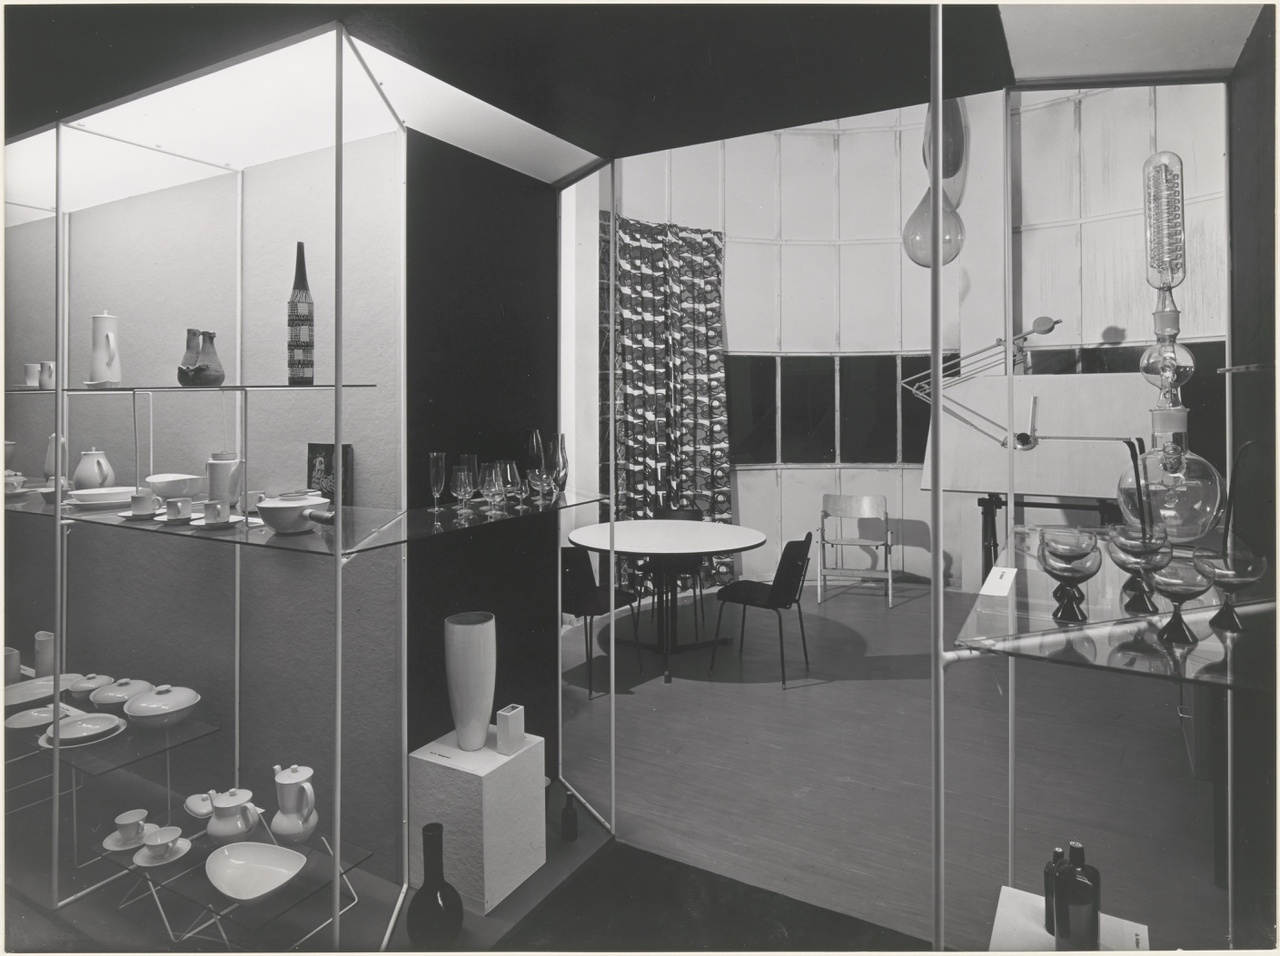 Afbeelding van Nederlandse afdeling Triënnale, hoek keramiek, glas en tekentafel